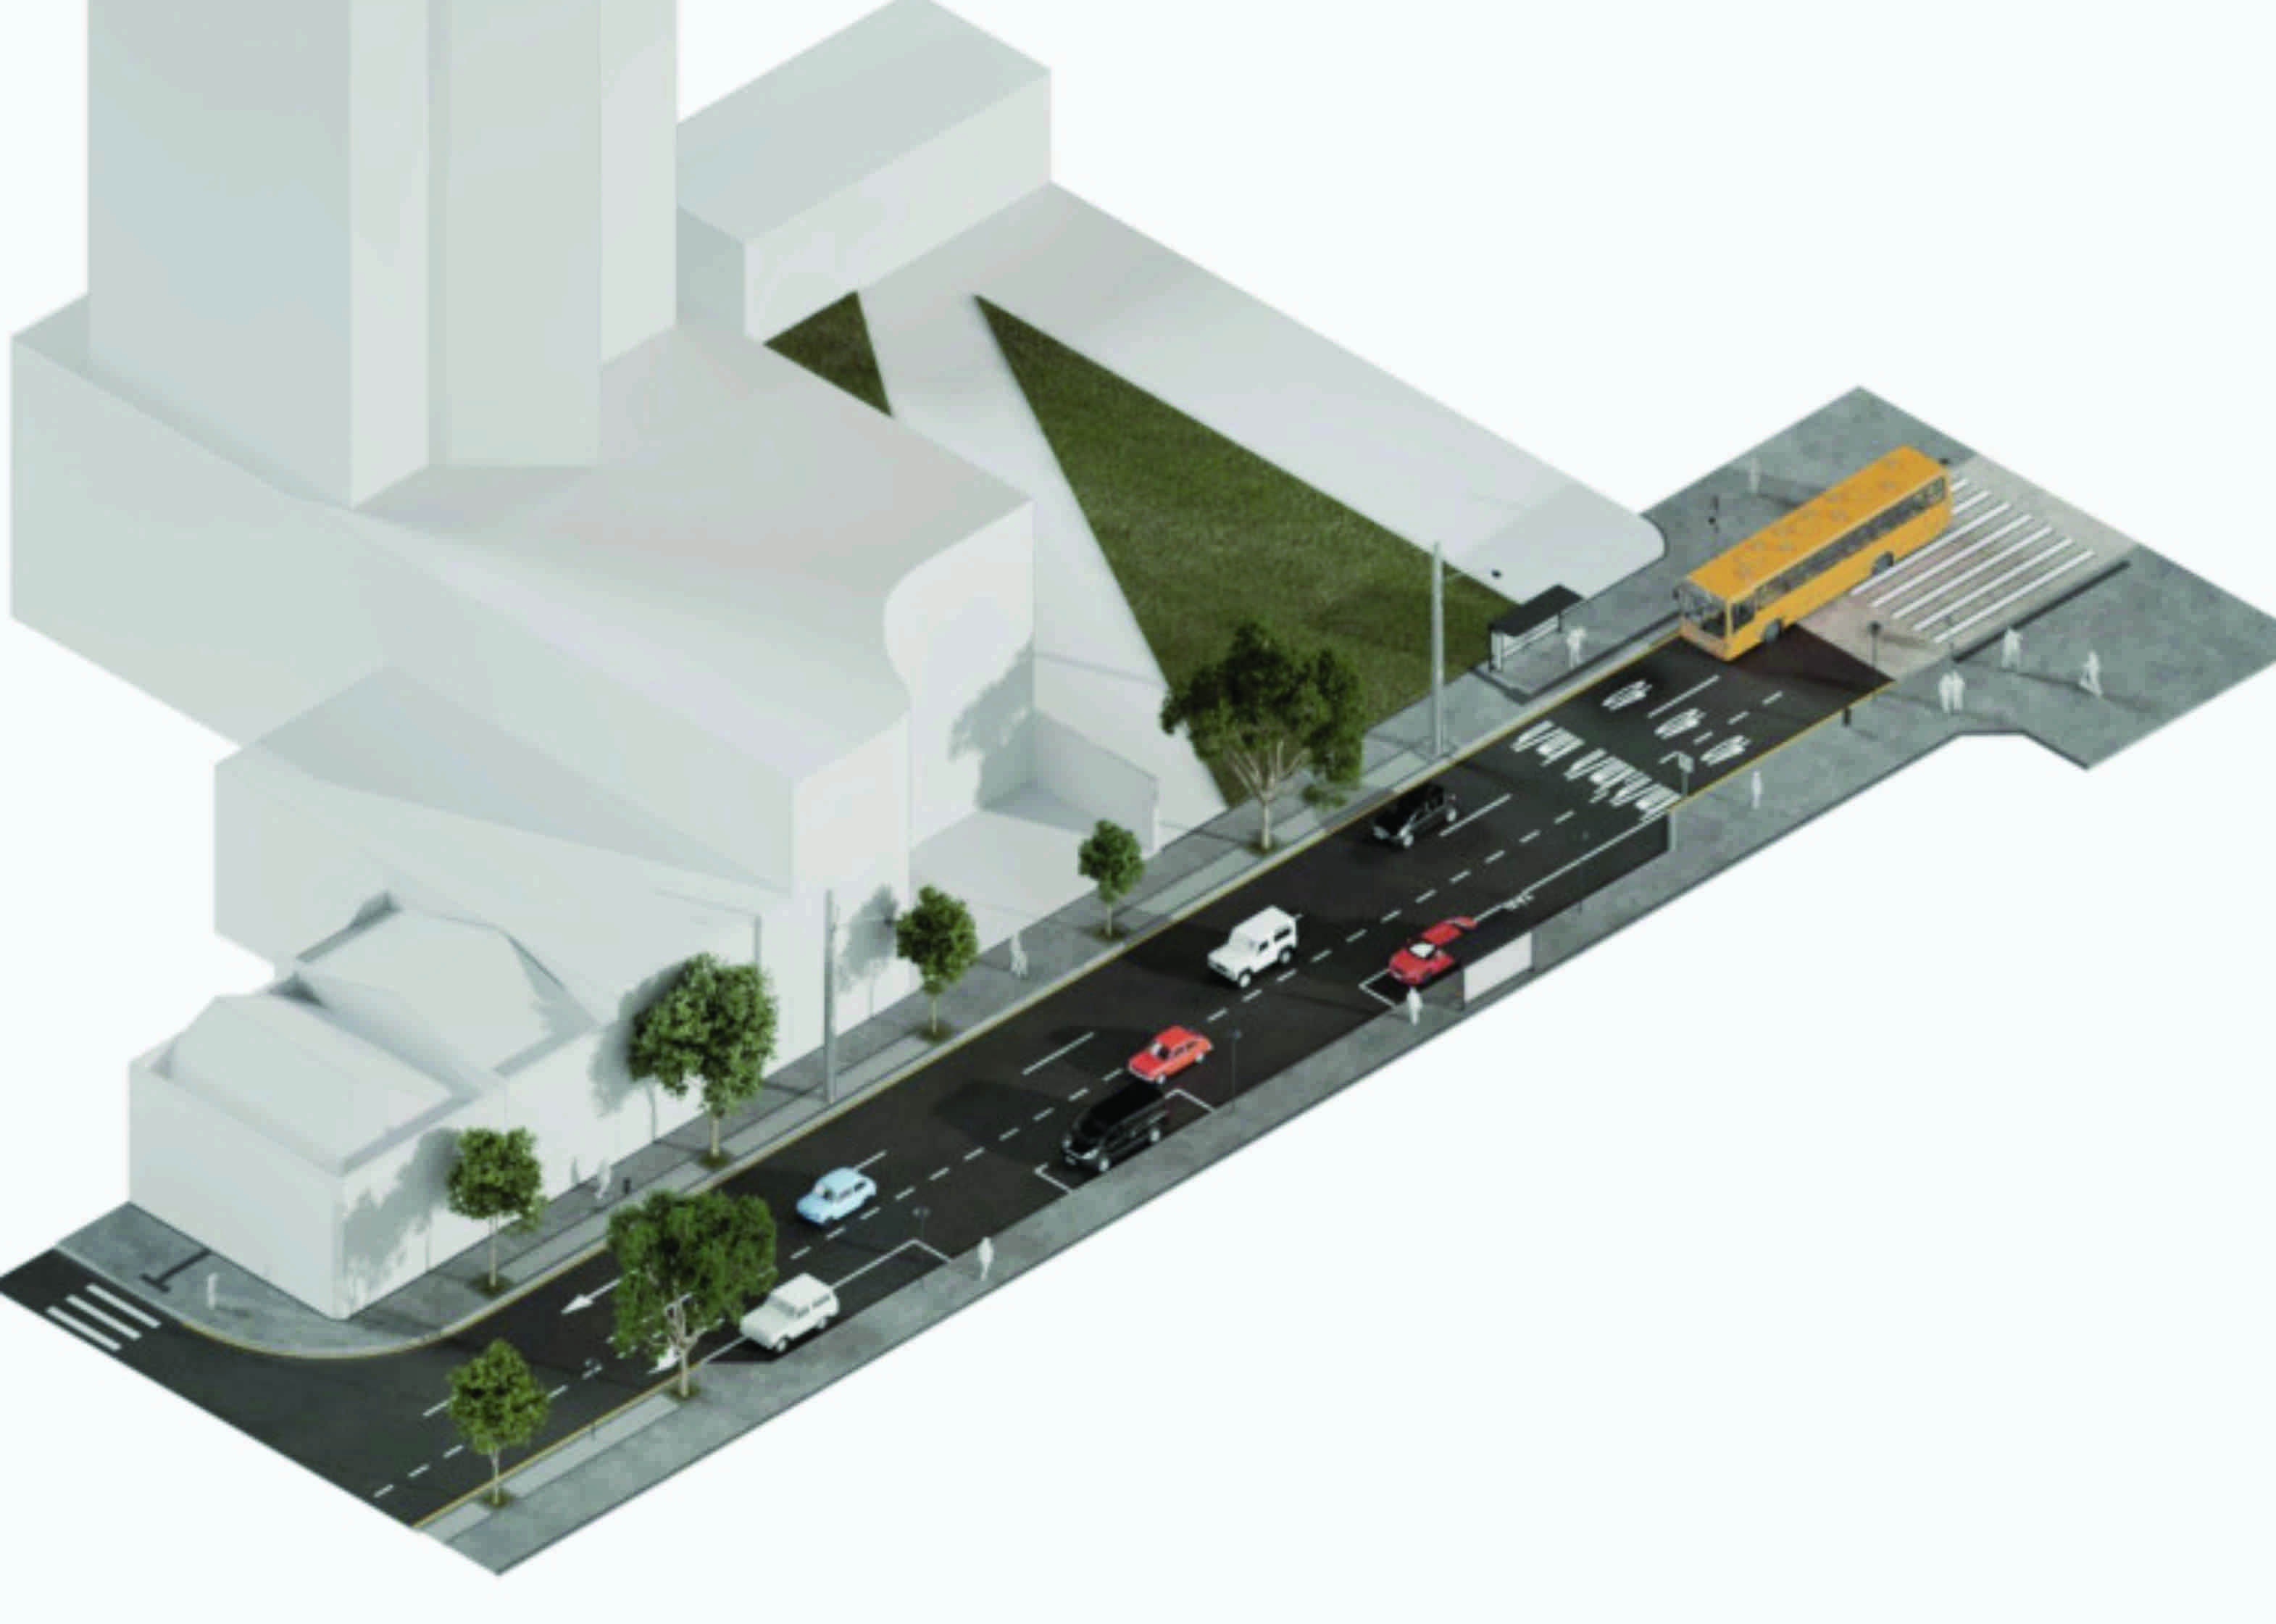 Obra da Prefeitura de Curitiba vai garantir calçadas largas e acessíveis no Centro. Saiba onde